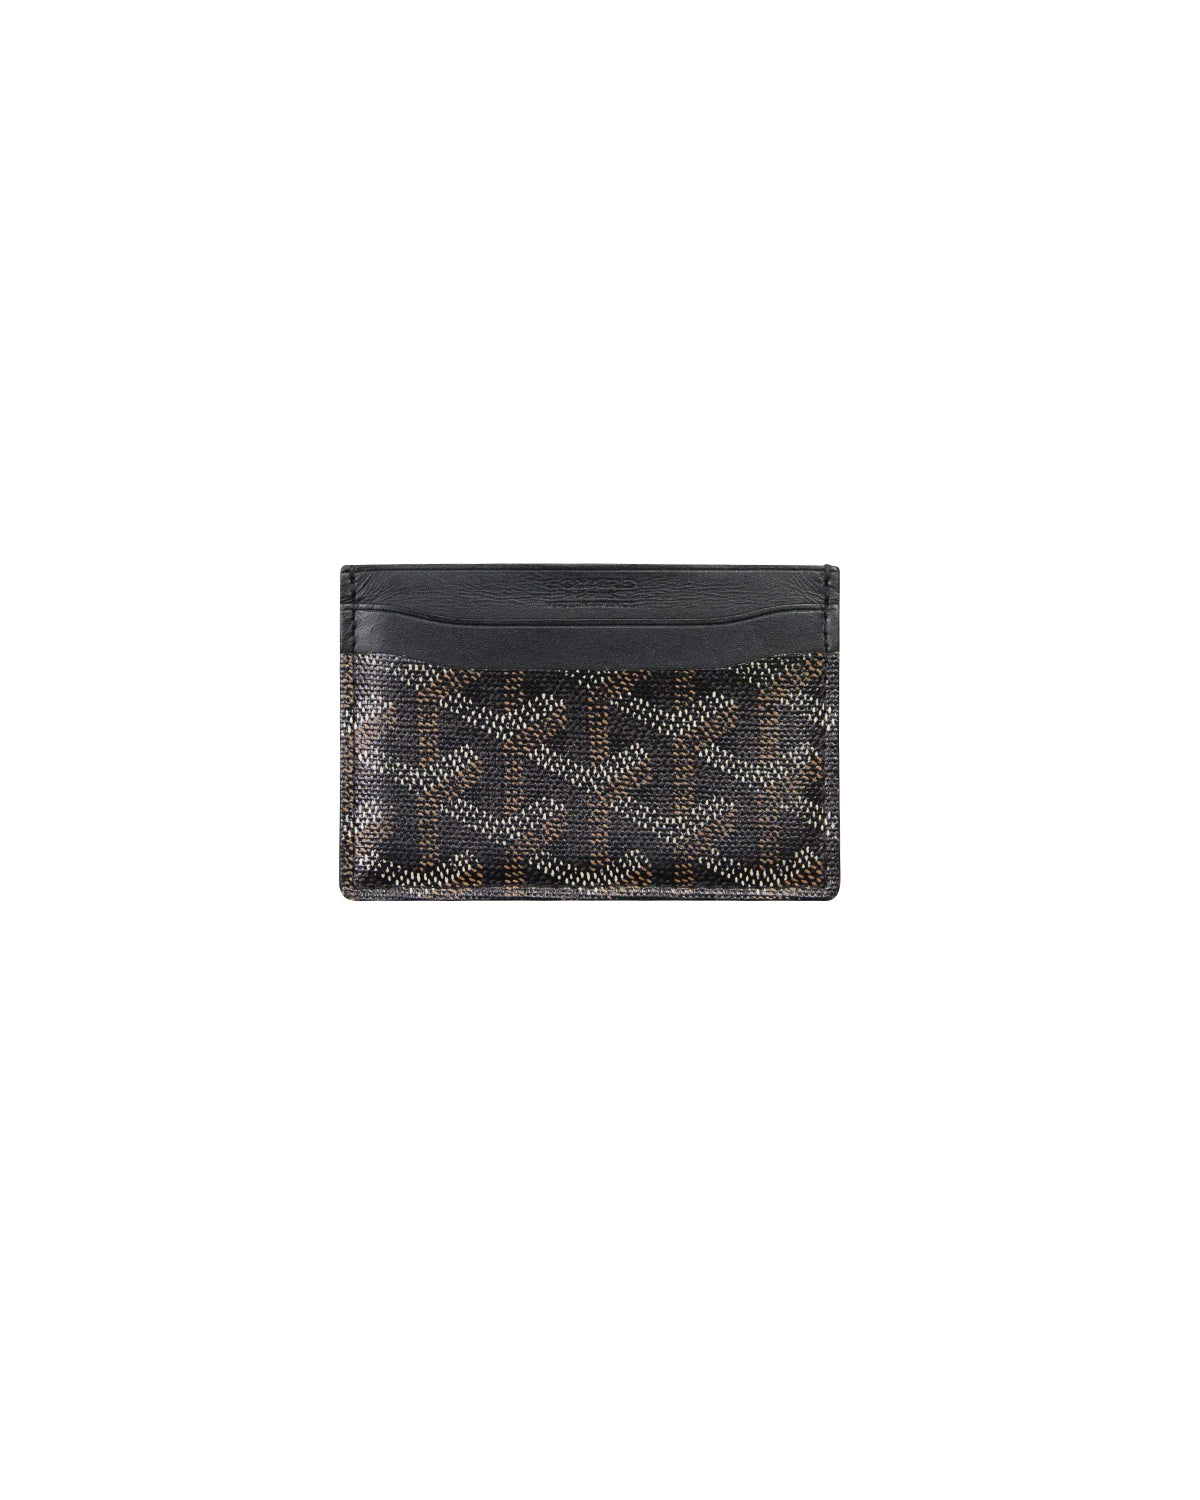 SAINT SULPICE CARD HOLDER Black [Goyard2106243] - $999.00 : Goyard Bags